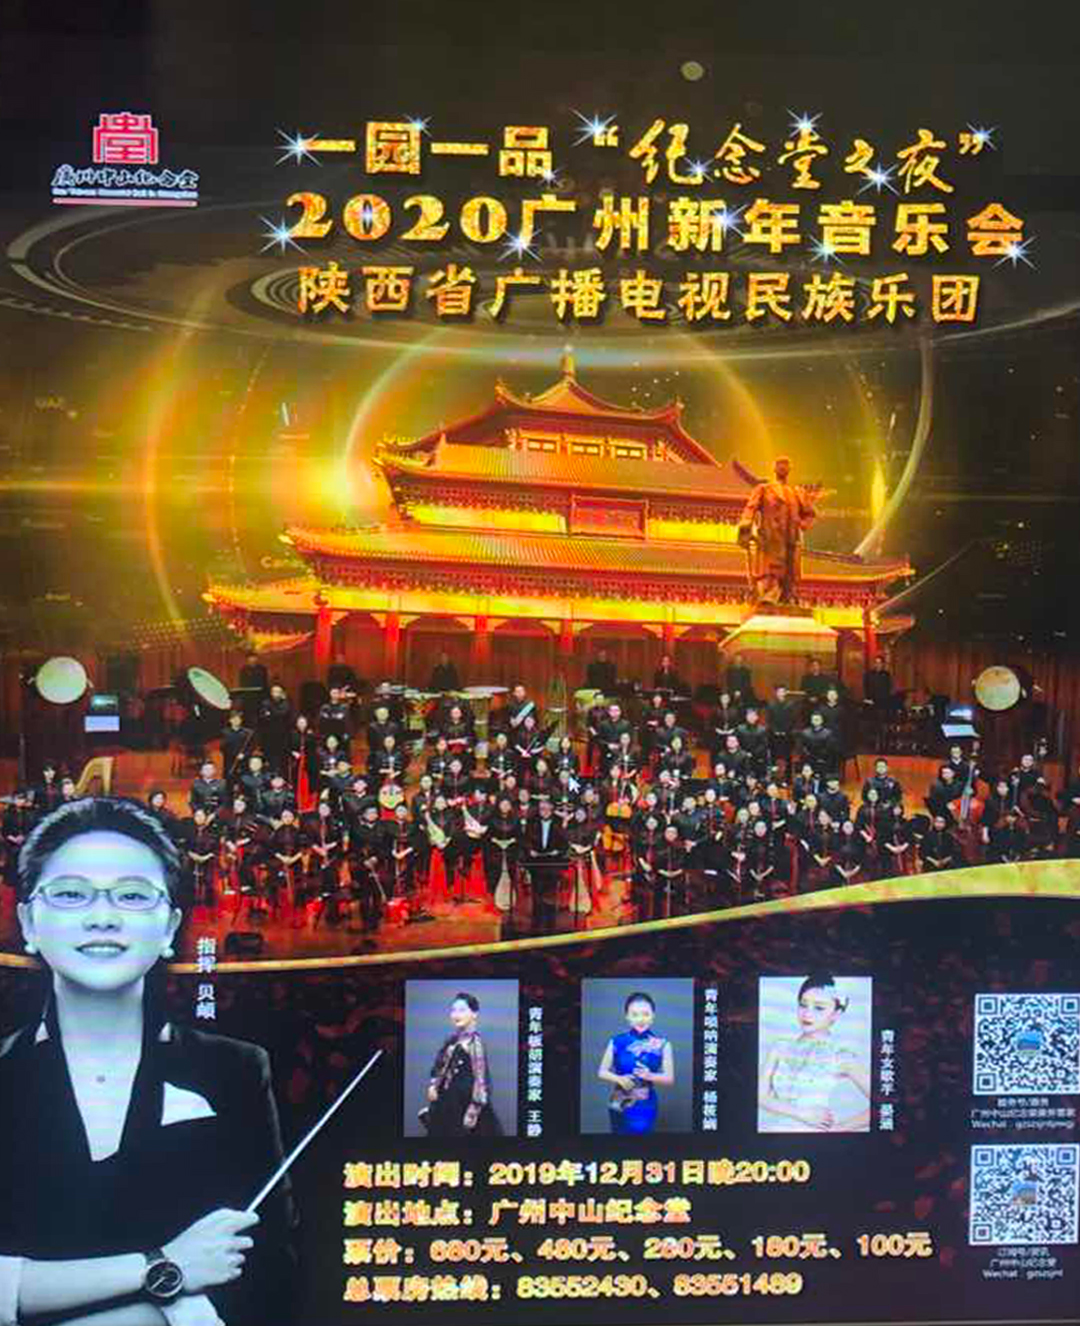 “一园一品”纪念堂之夜 2020广州新年音乐会宏音斋第五代传承人贝頔担任指挥